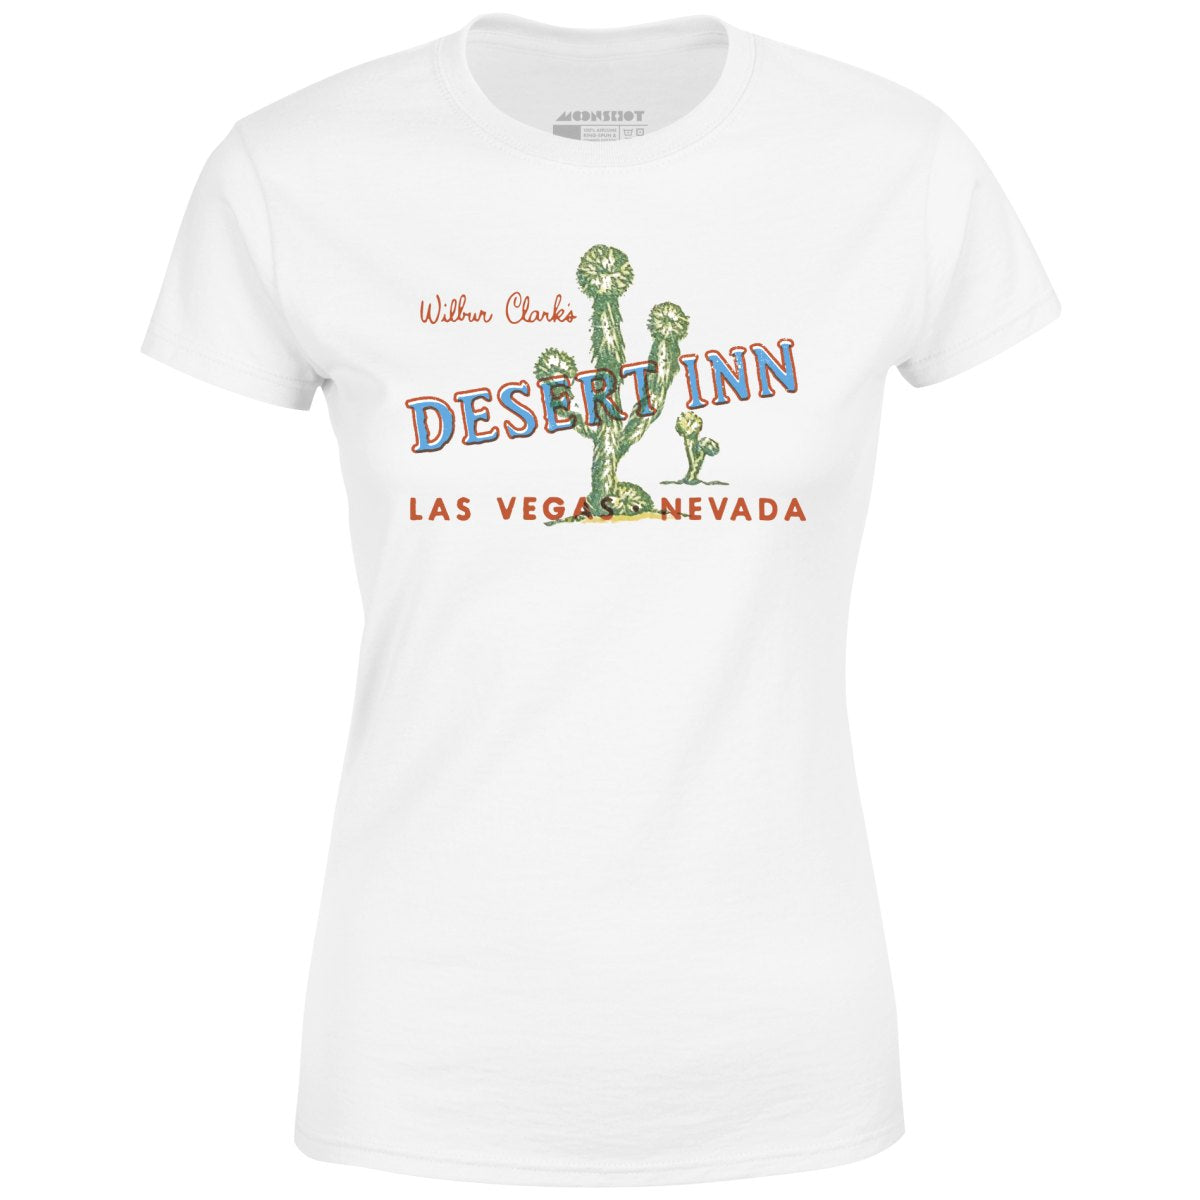 Desert Inn - Vintage Las Vegas - Women's T-Shirt